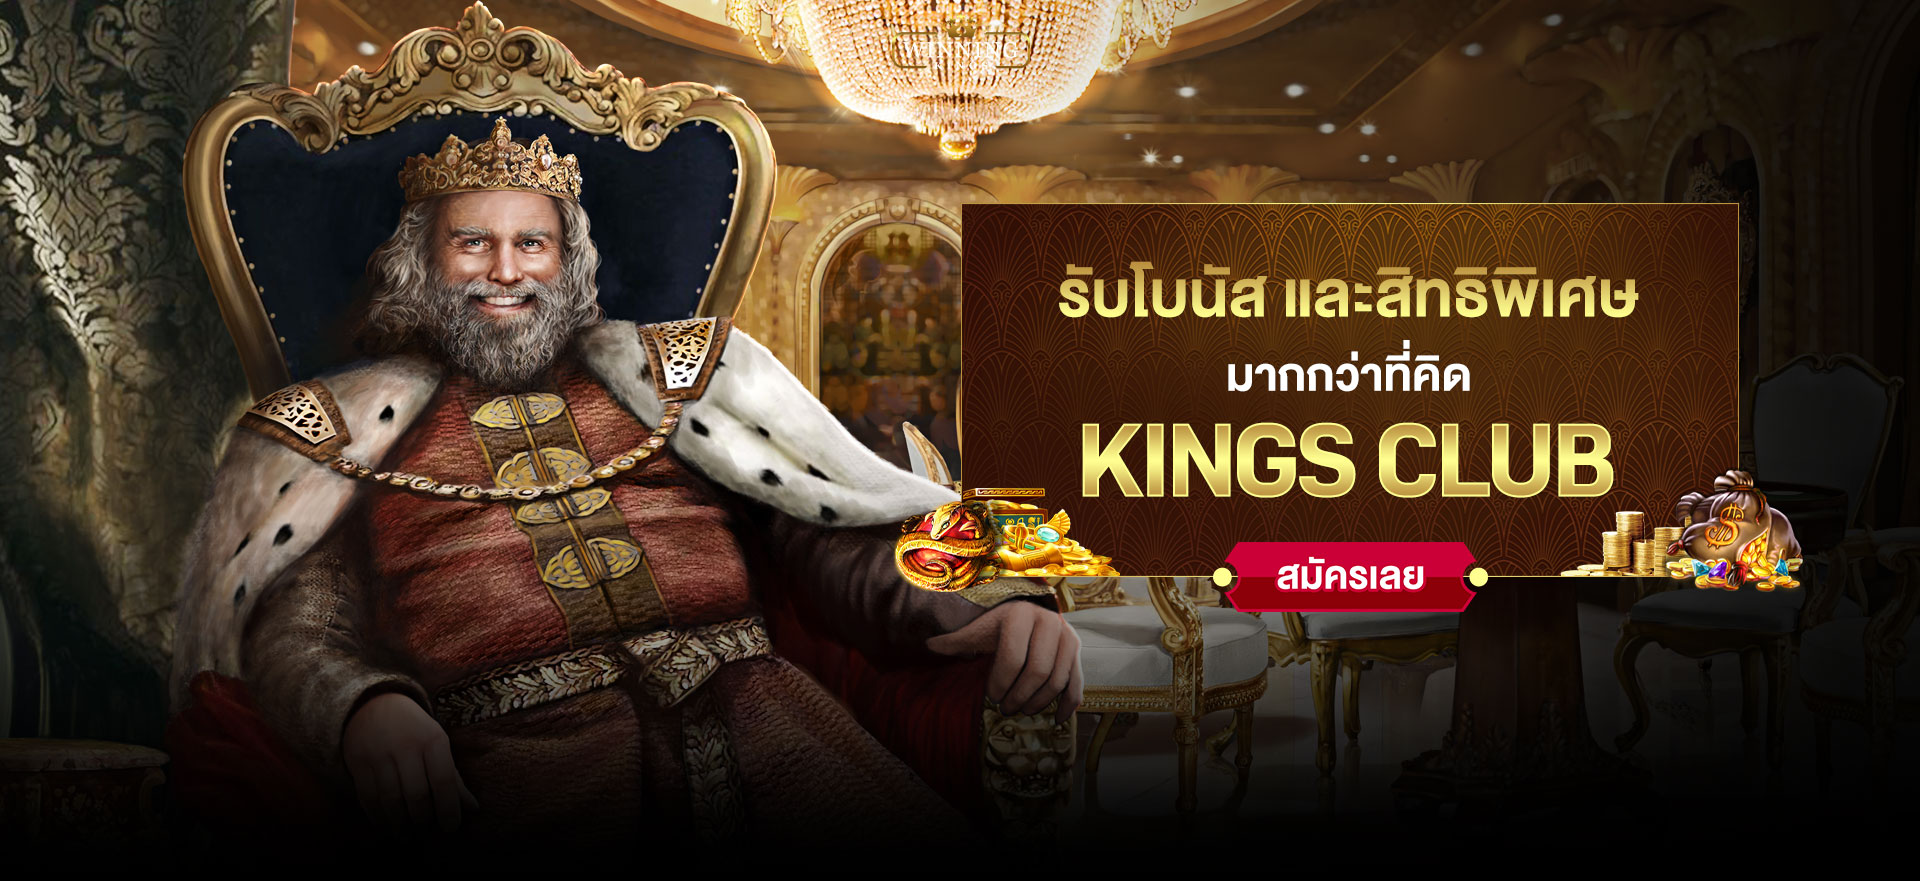 https://winningkingsthai.com/wp-content/uploads/2021/09/th-hero-banner-kingsclub.jpg